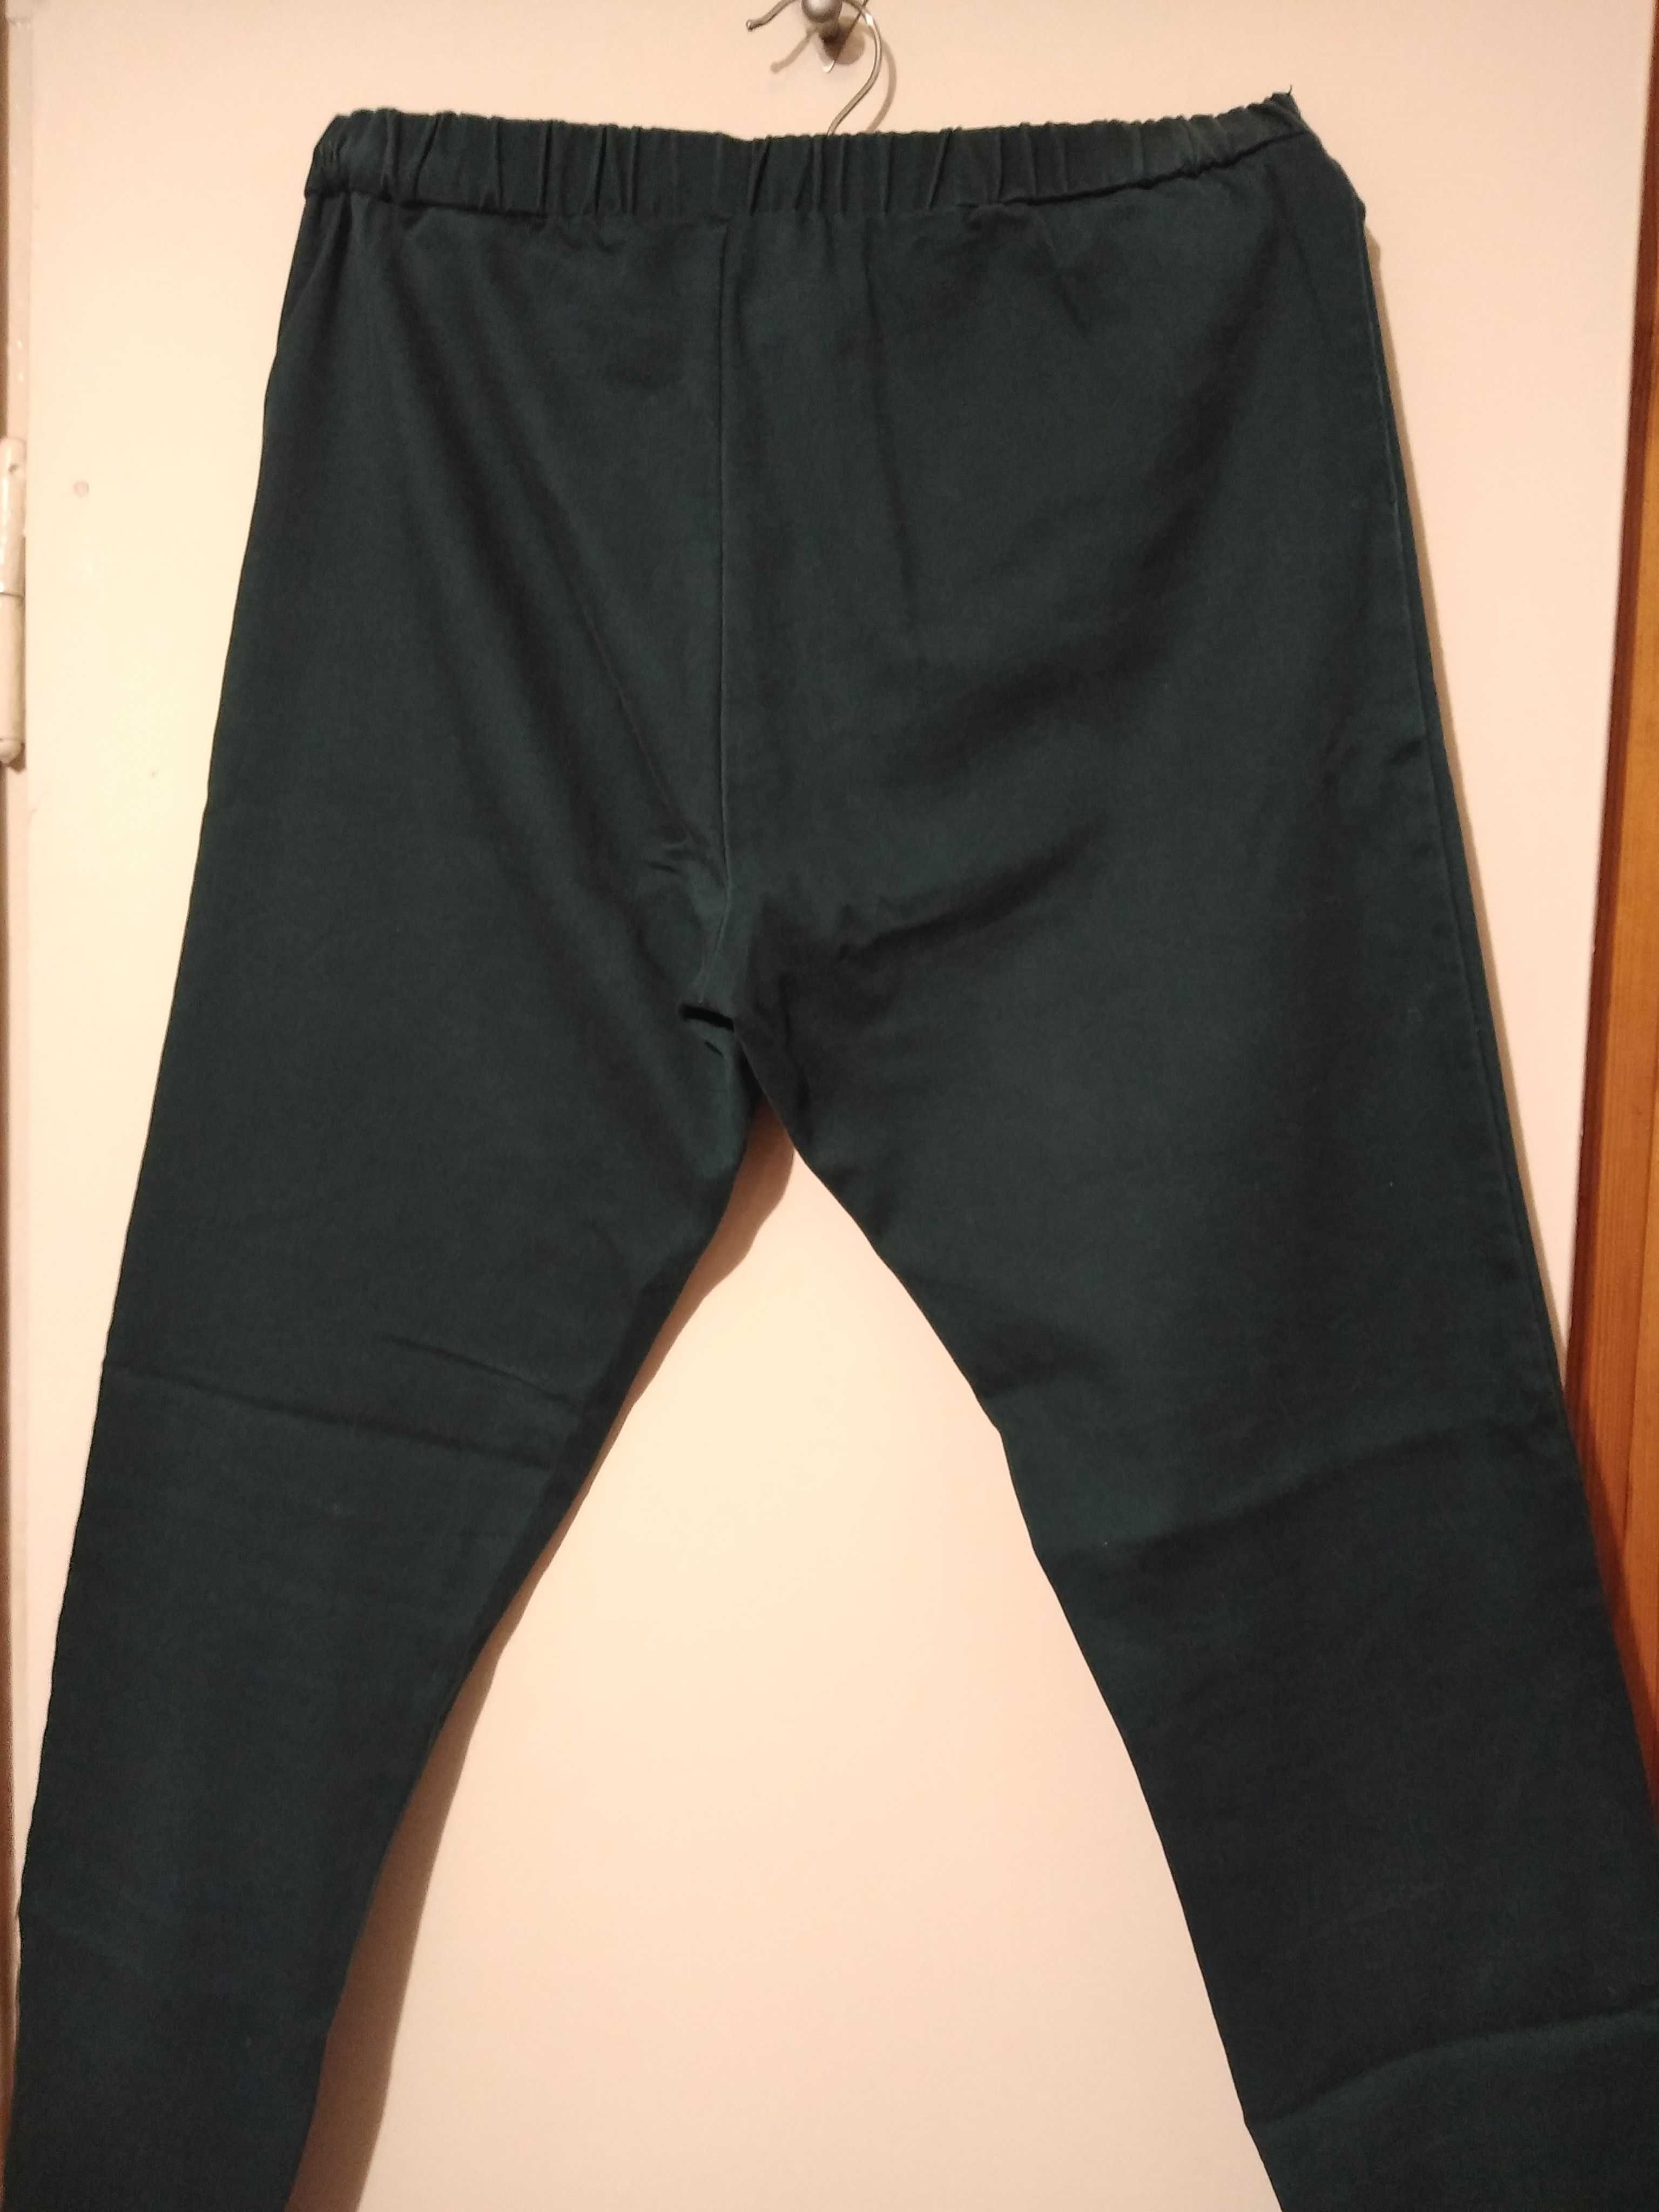 Spodnie jeansowe joggery Esmara ciemnozielone rozmiar 38-46